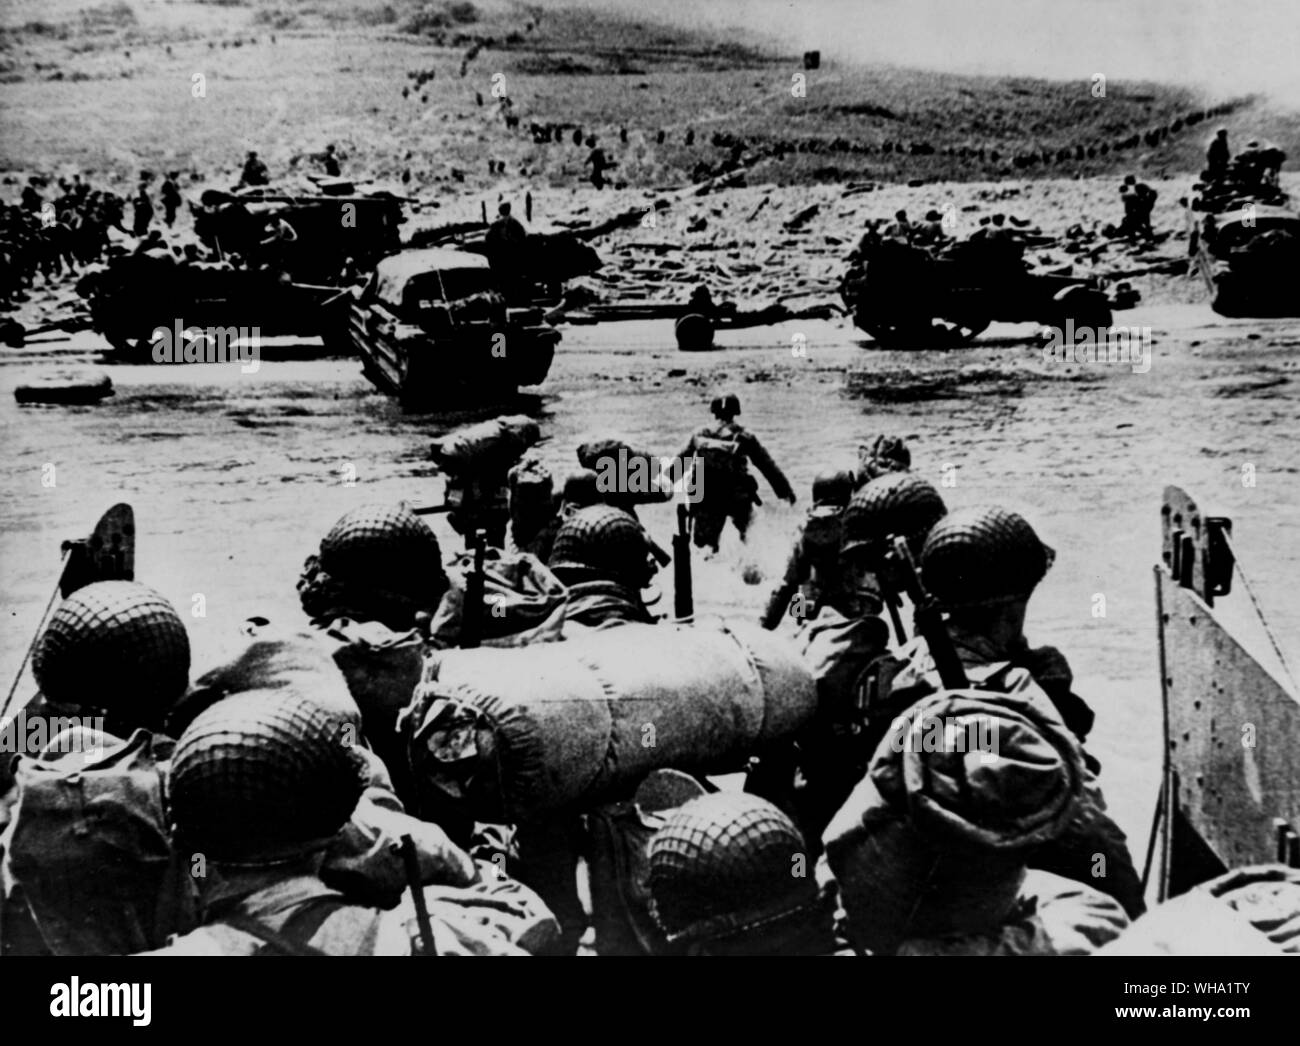 WW2: D-Tag. Amerikanische stoßtruppen von einem Landing Craft durch das flache Wasser auf einen Strand - Kopf im nördlichen Frankreich während der Landung der Alliierten. Hälfte - Titel und ein Strände DUKW am Strand - Kopf. Der Rauch im Hintergrund ist von naval Geschützfeuer Unterstützung der Angriff. 6. Juni 1944. Stockfoto